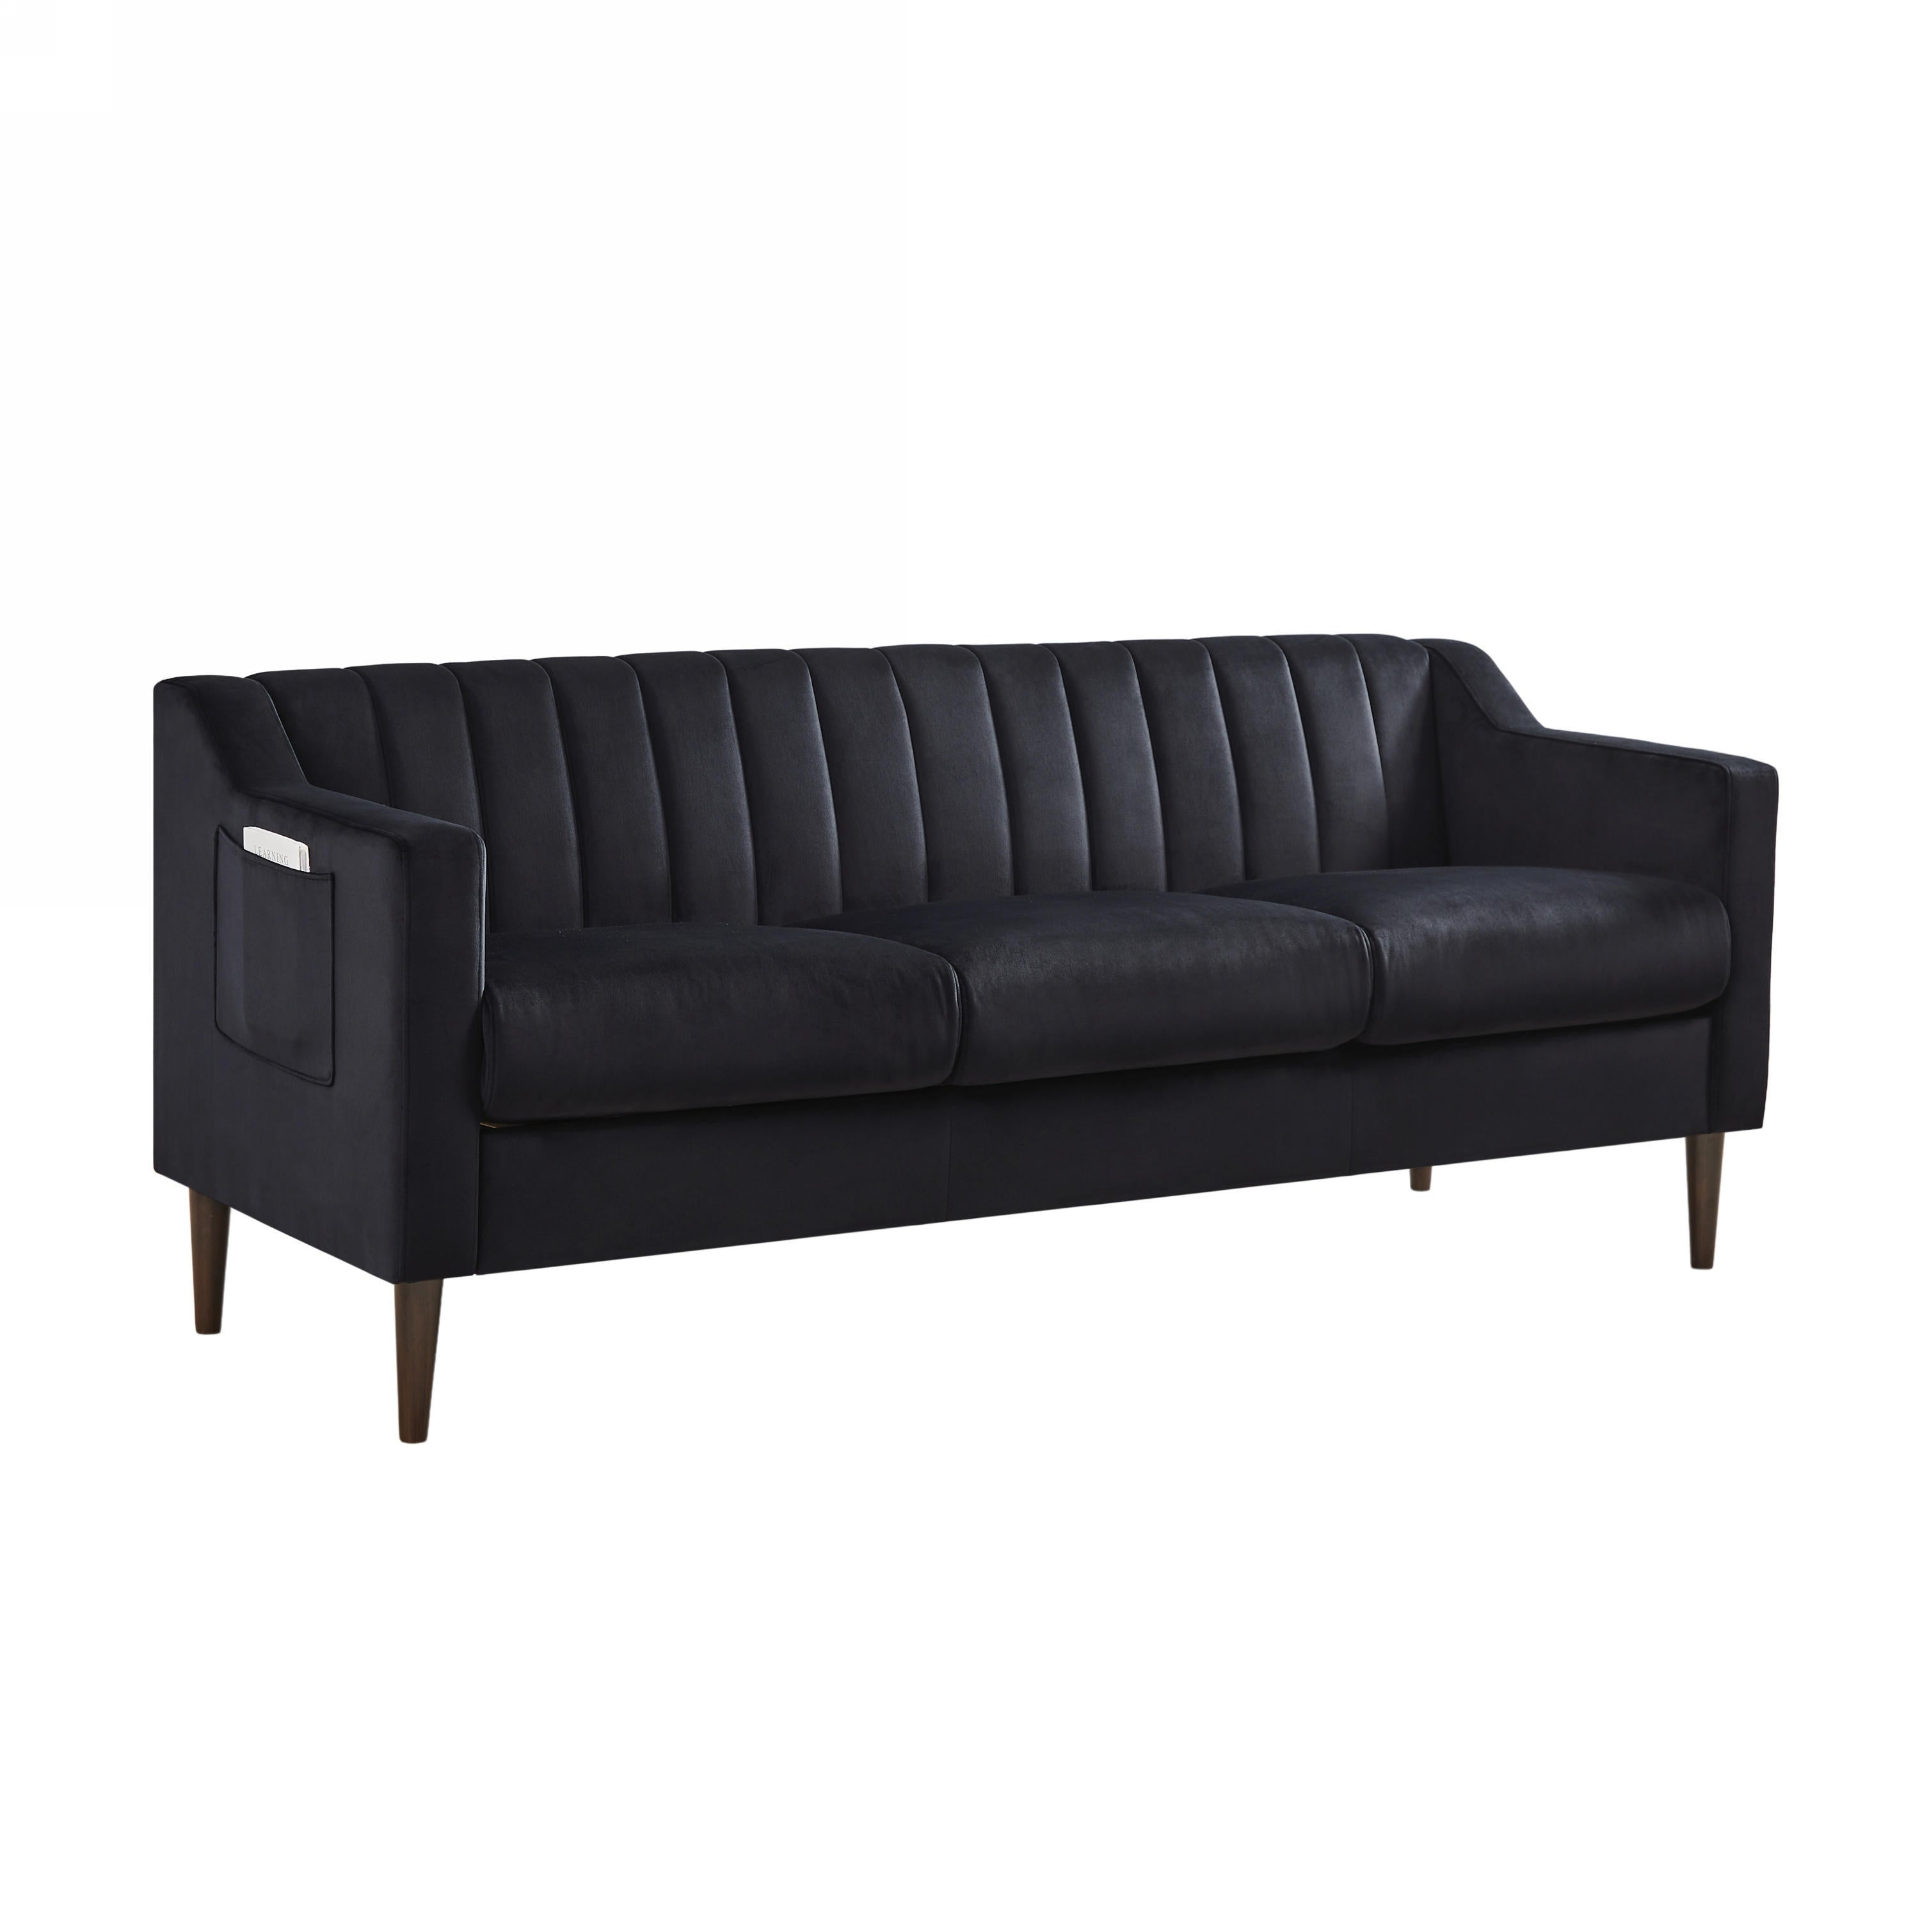 Black Velvet 3-Seat Upholstered Sofa with Wooden Legs (77"x28")